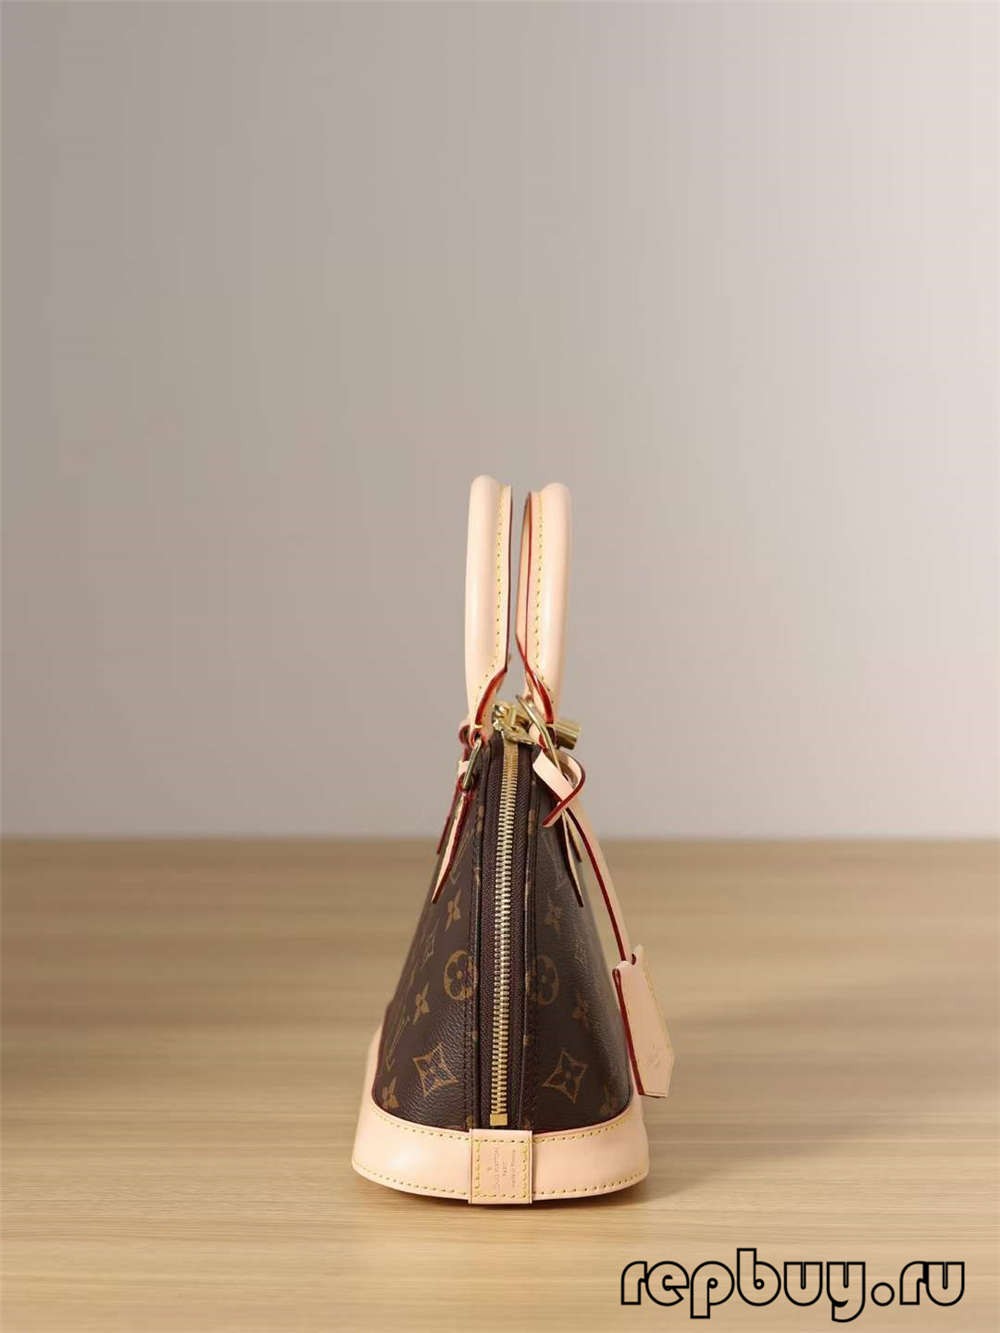 Louis Vuitton M53152 Alma BB çenteyên replika yên bi kalîteya jorîn (2022 Taybet)-Kalîteya herî çêtirîn Fake Louis Vuitton Bag Bag, Replica designer bag ru